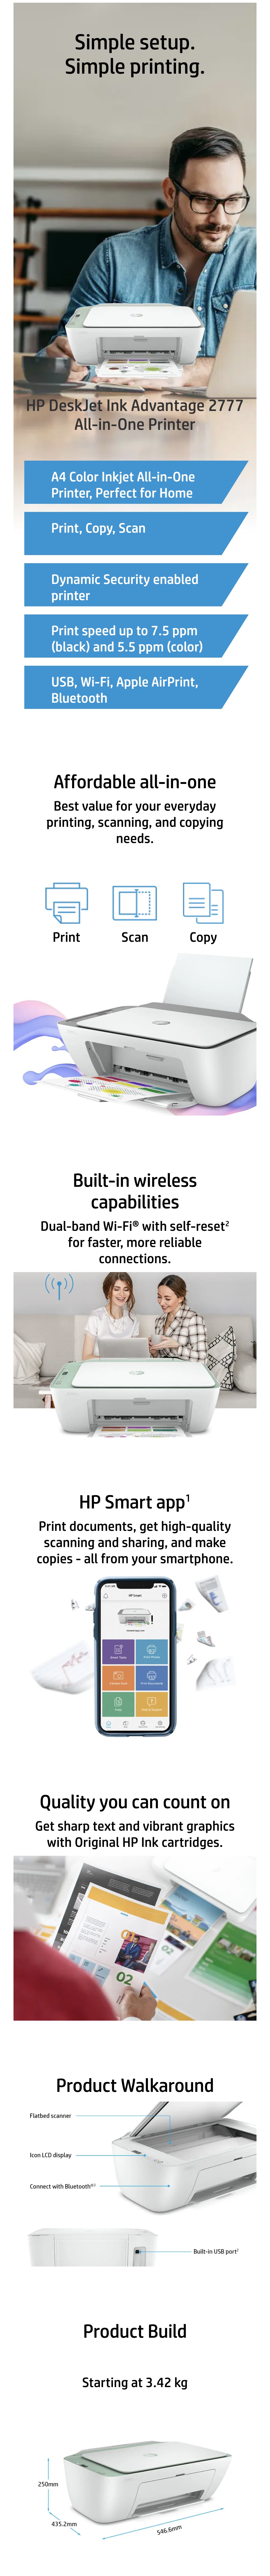 HP-DeskJet-Ink-Advantage-2777-Wireless-All-in-One-Printer-Description